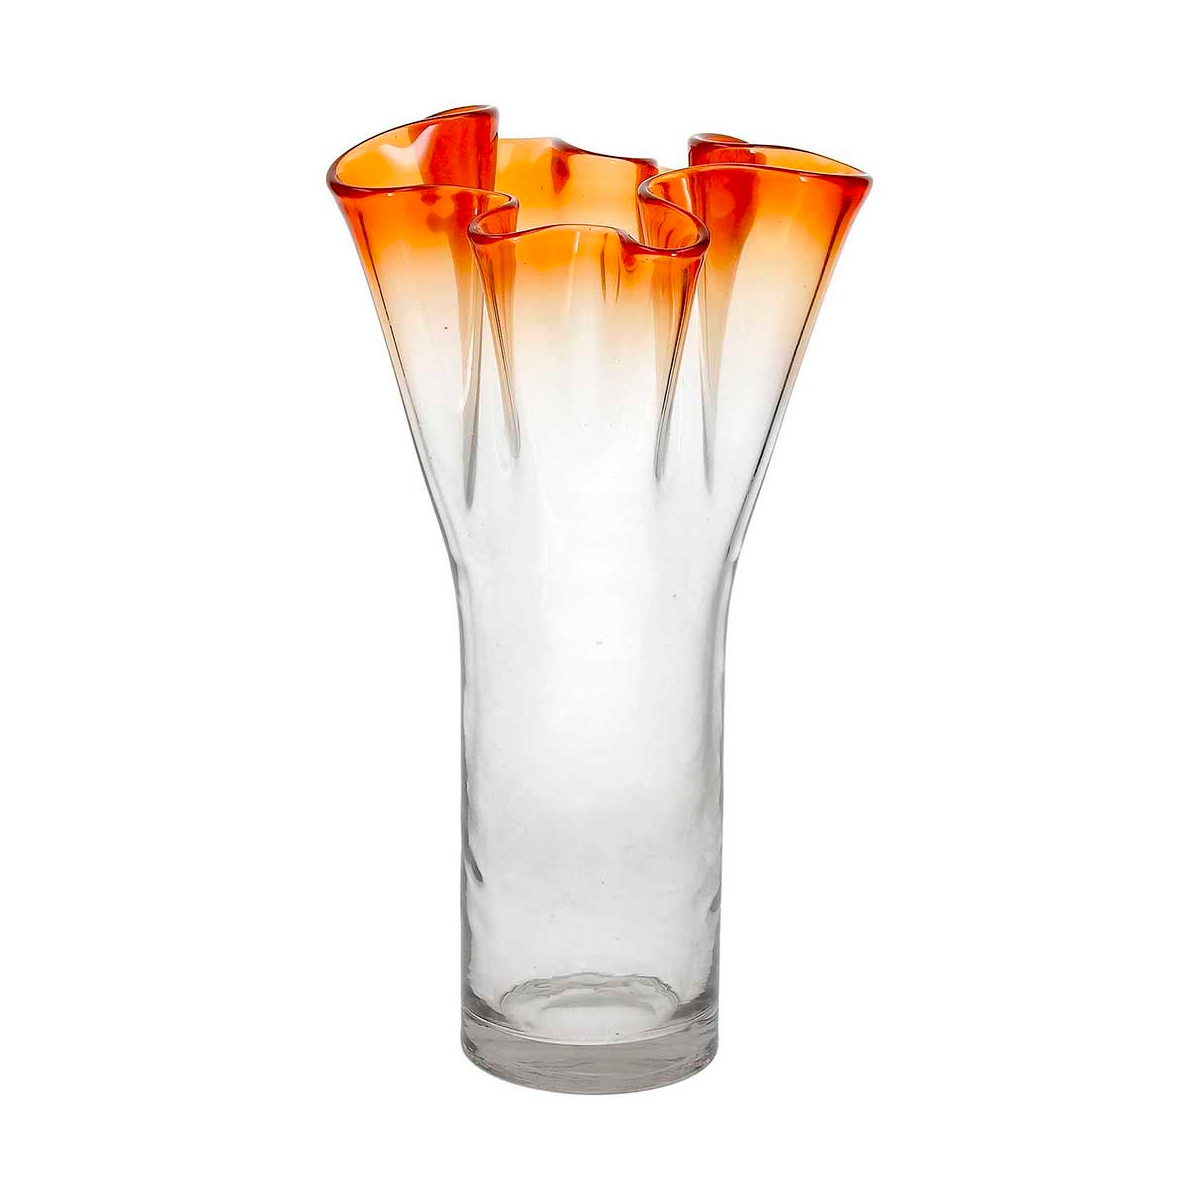 Ваза Andrea Fontebasso Glass Design Bizarre 32см, цвет оранжевый часы песочные andrea fontebasso glass design time 24см